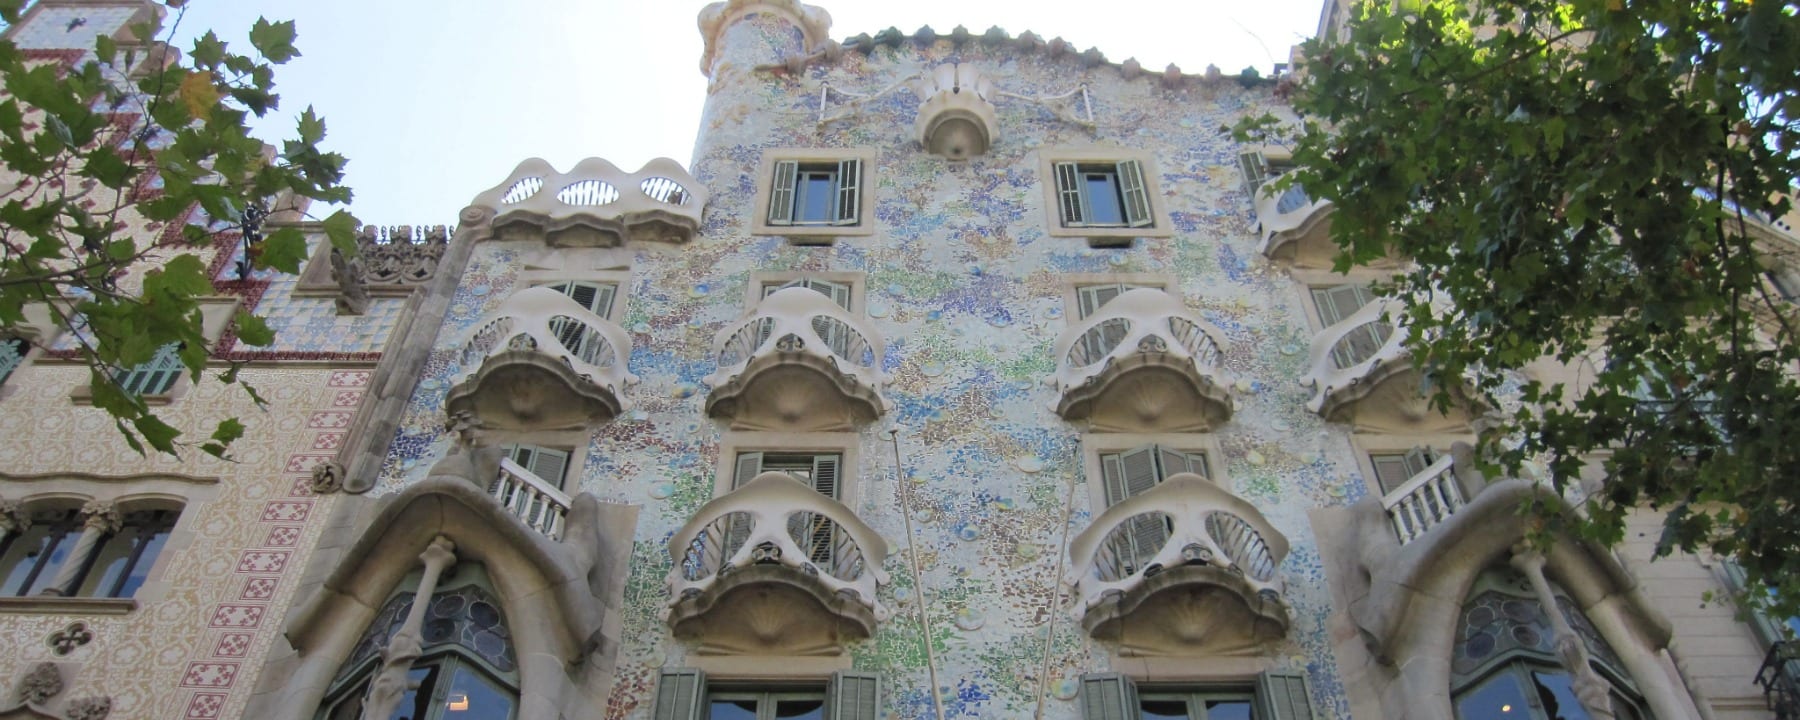 Casa Balto Barcelona Spain